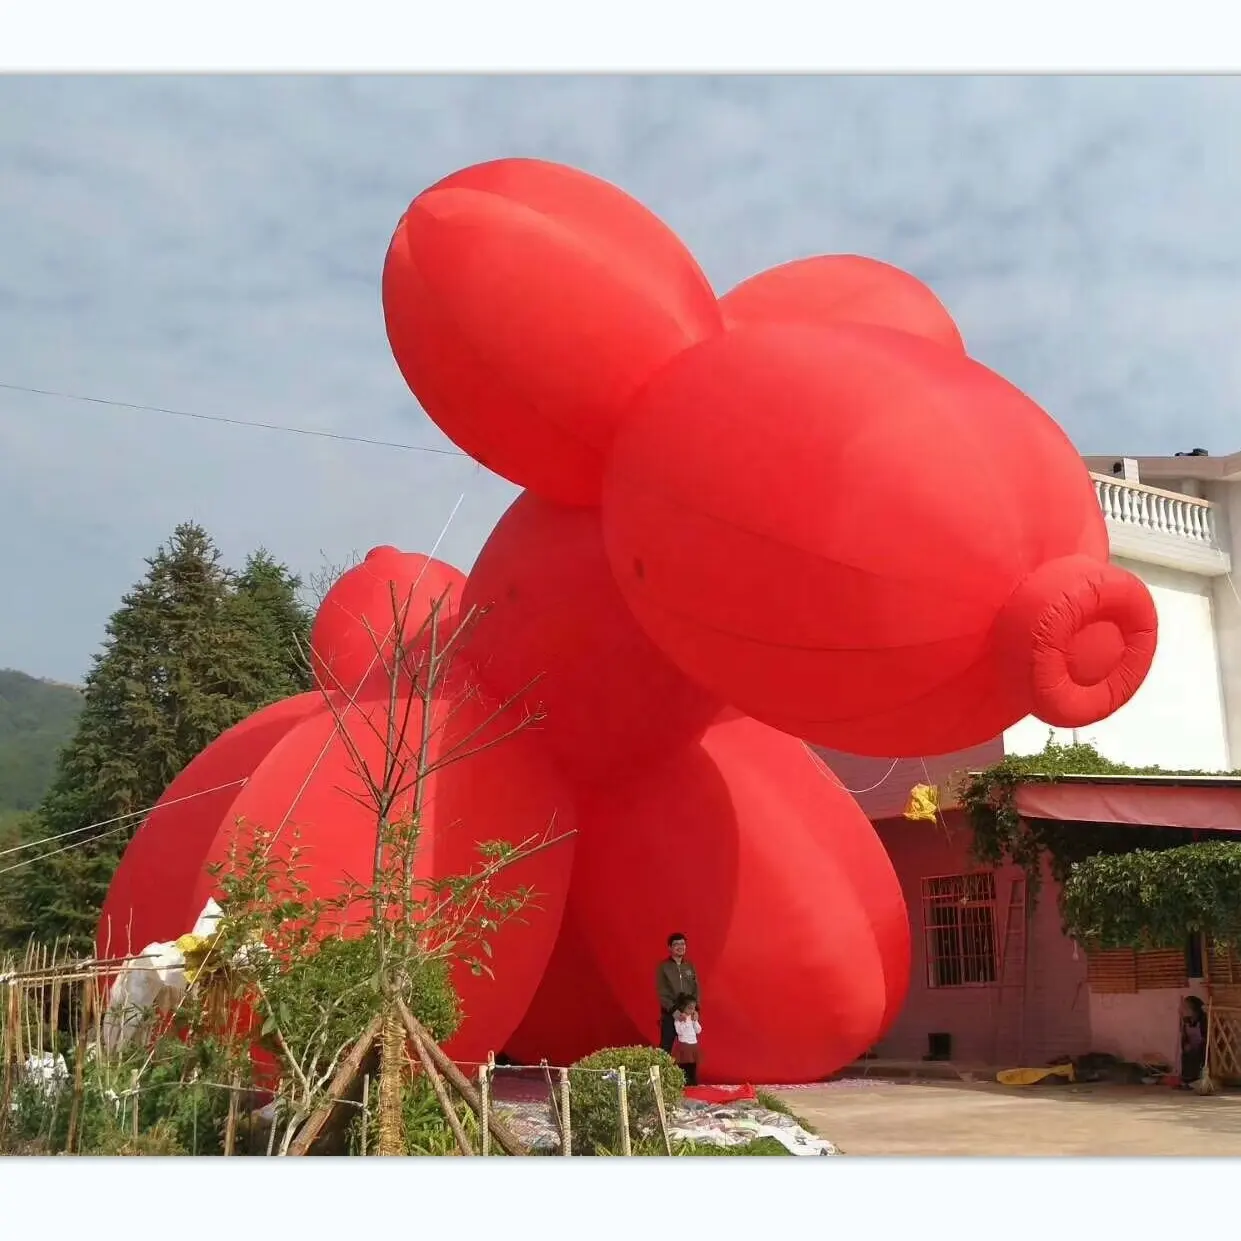 โมเดลสุนัขเป่าลมขนาดยักษ์พร้อมเครื่องเป่าลมรูปสุนัขเป่าลมสีแดงสำหรับโฆษณา